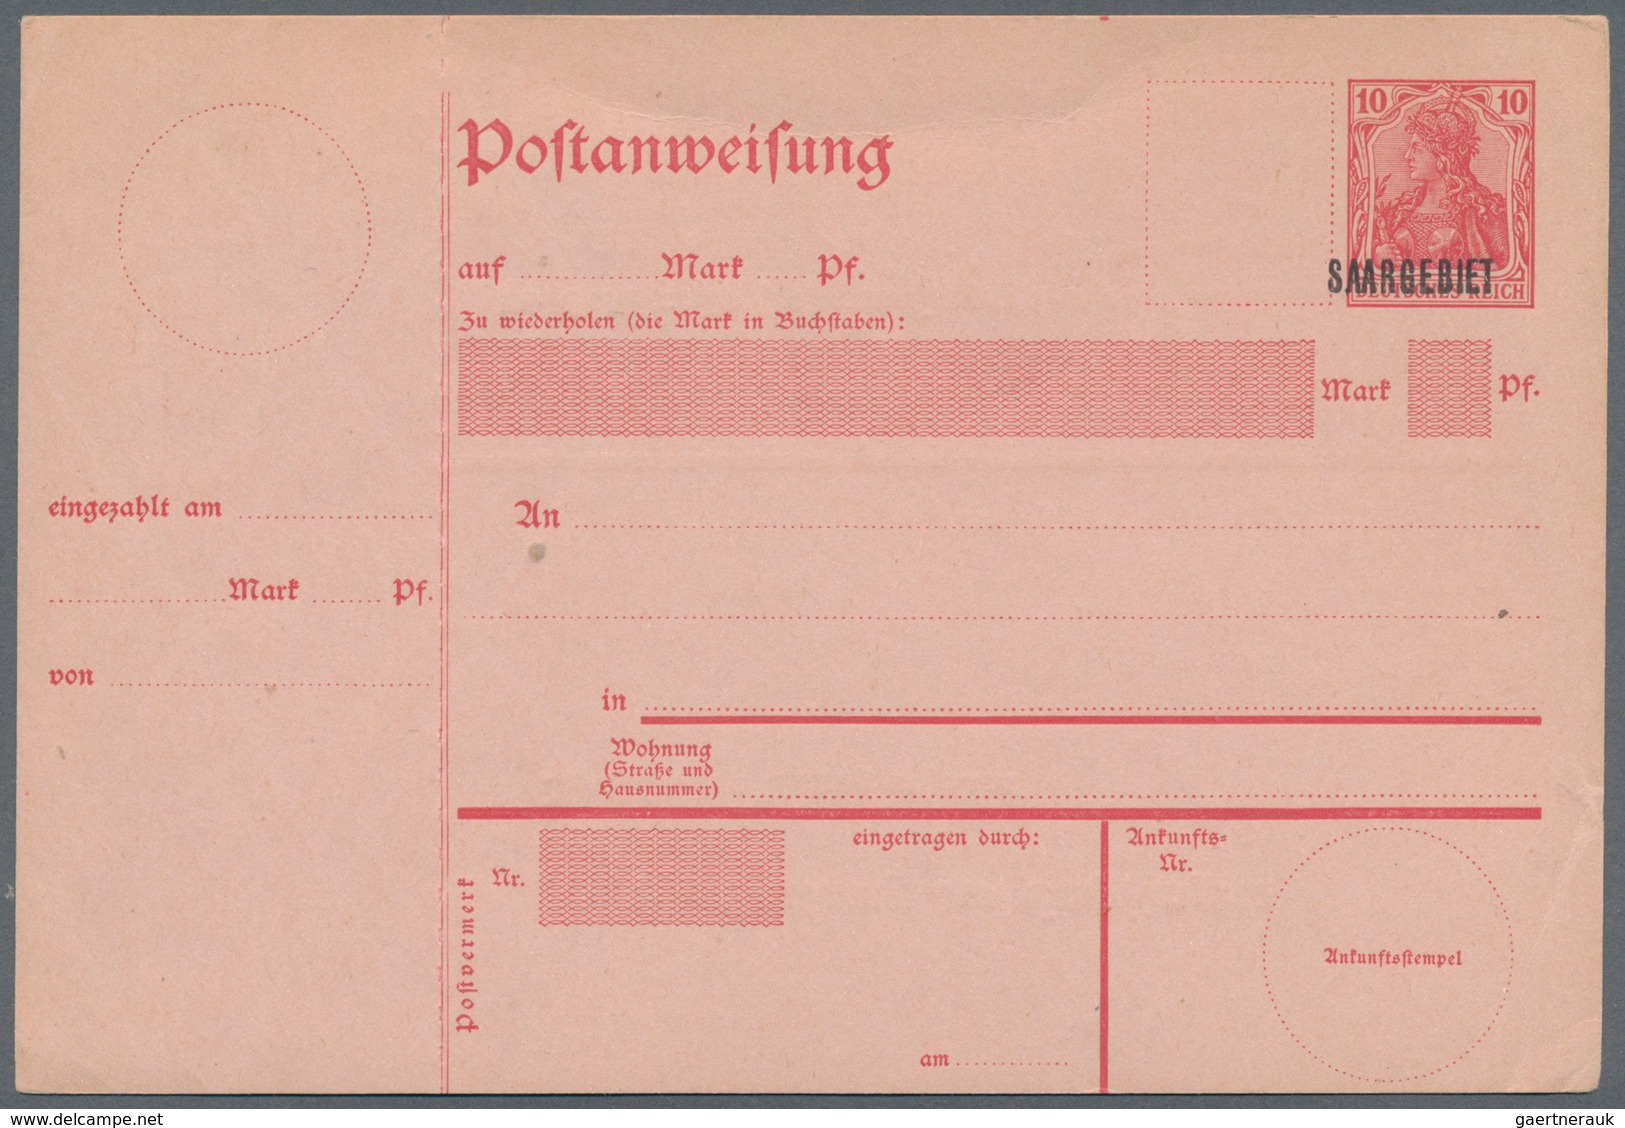 Deutsche Abstimmungsgebiete: Saargebiet - Ganzsachen: 1920, 10 Pfg. Postanweisungs-Ganzsache Mit Auf - Postal Stationery